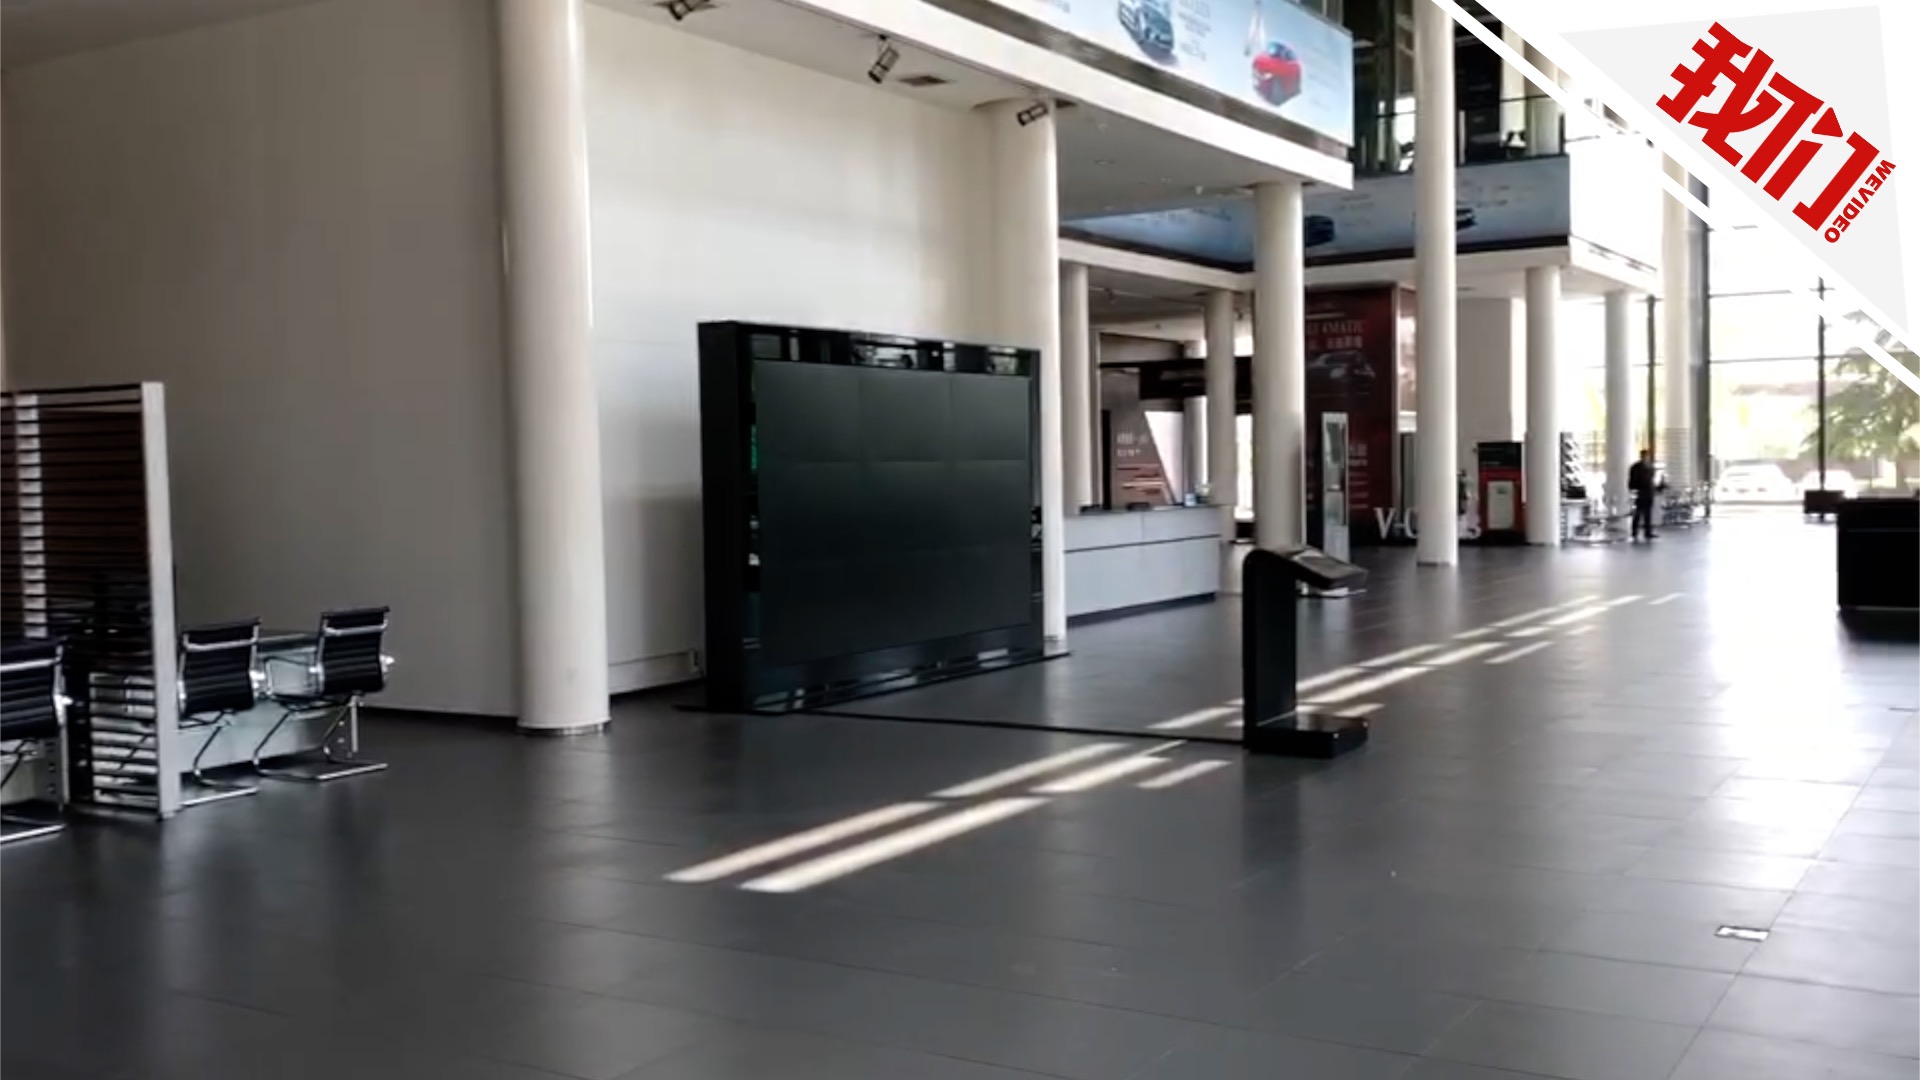 探访西安利之星奔驰4S店:展厅已被清空